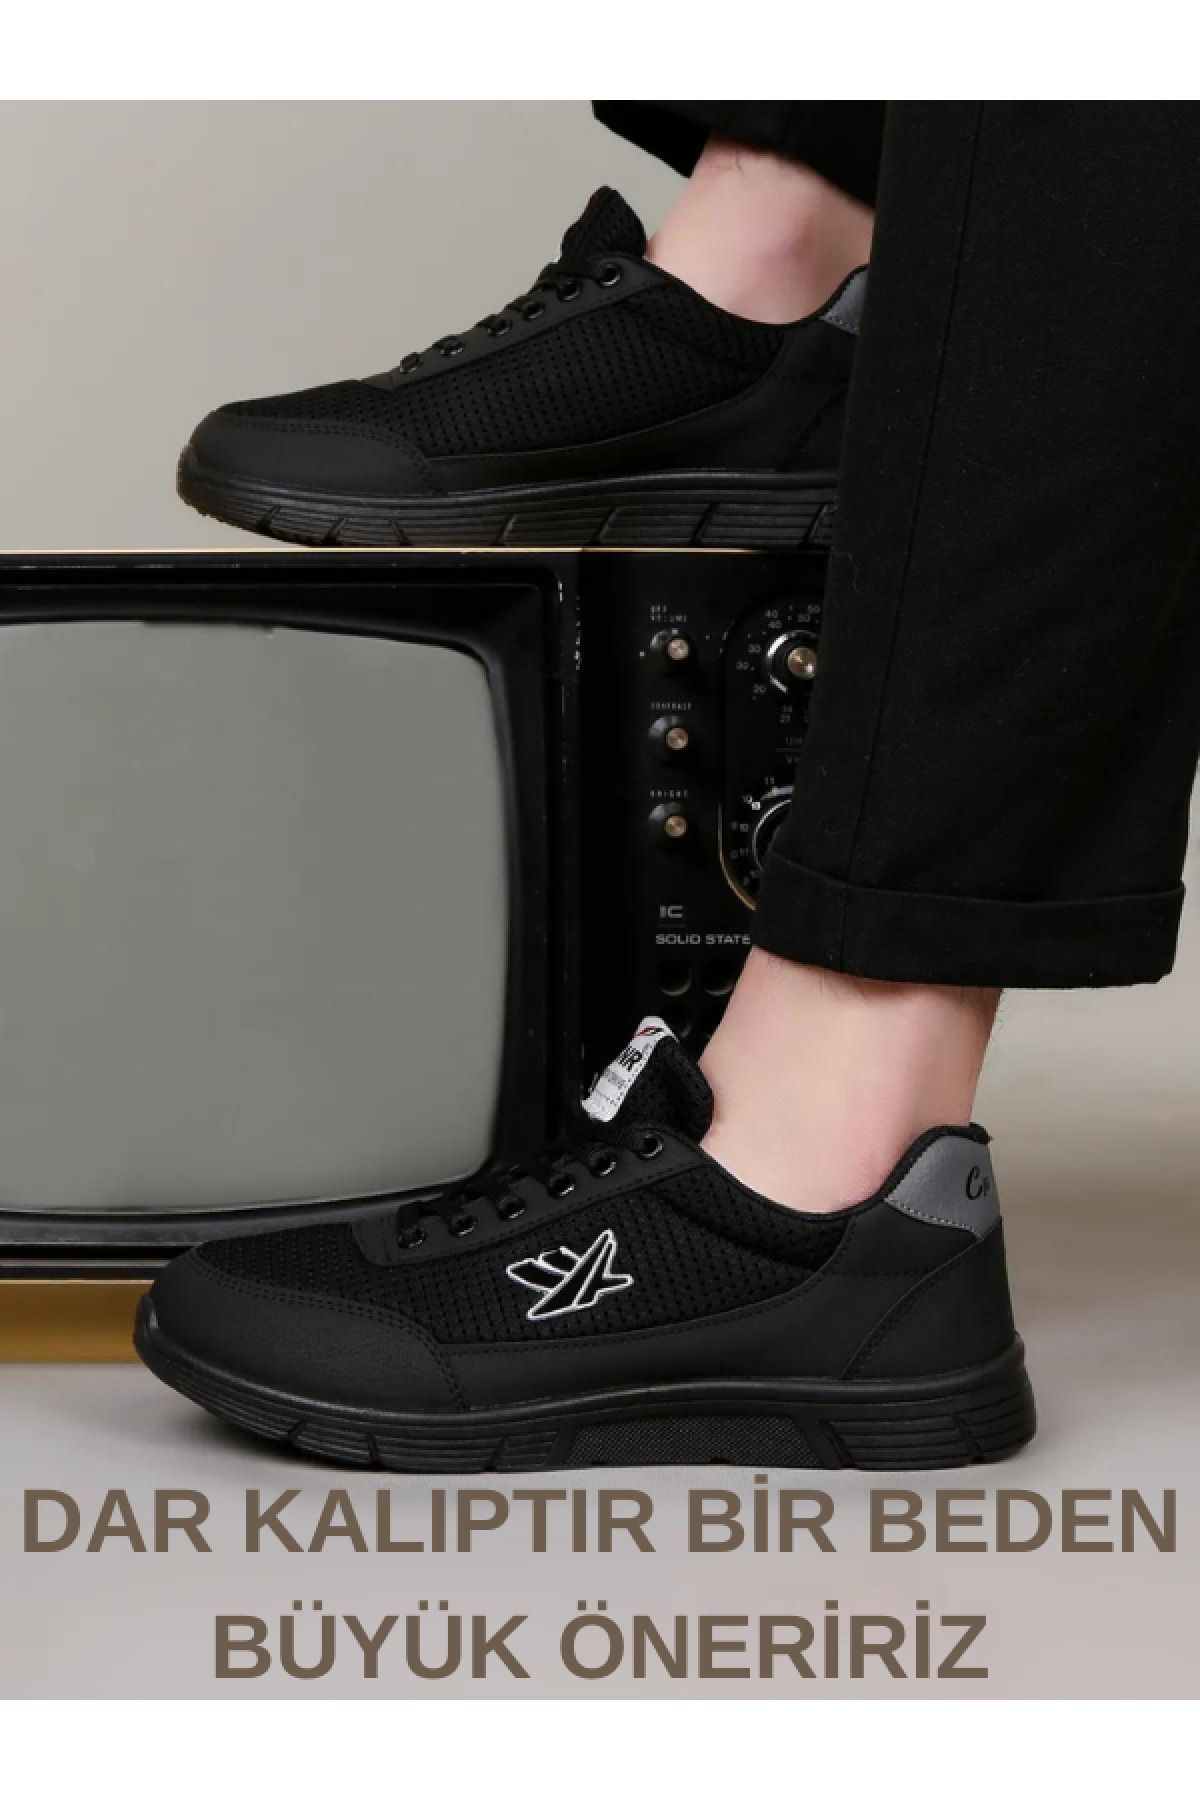 lord's ayakkabı Siyah-füme X Casual Rahat Yumuşak Tabanlı Comfort Sneaker Spor Yürüyüş Ayakkabı